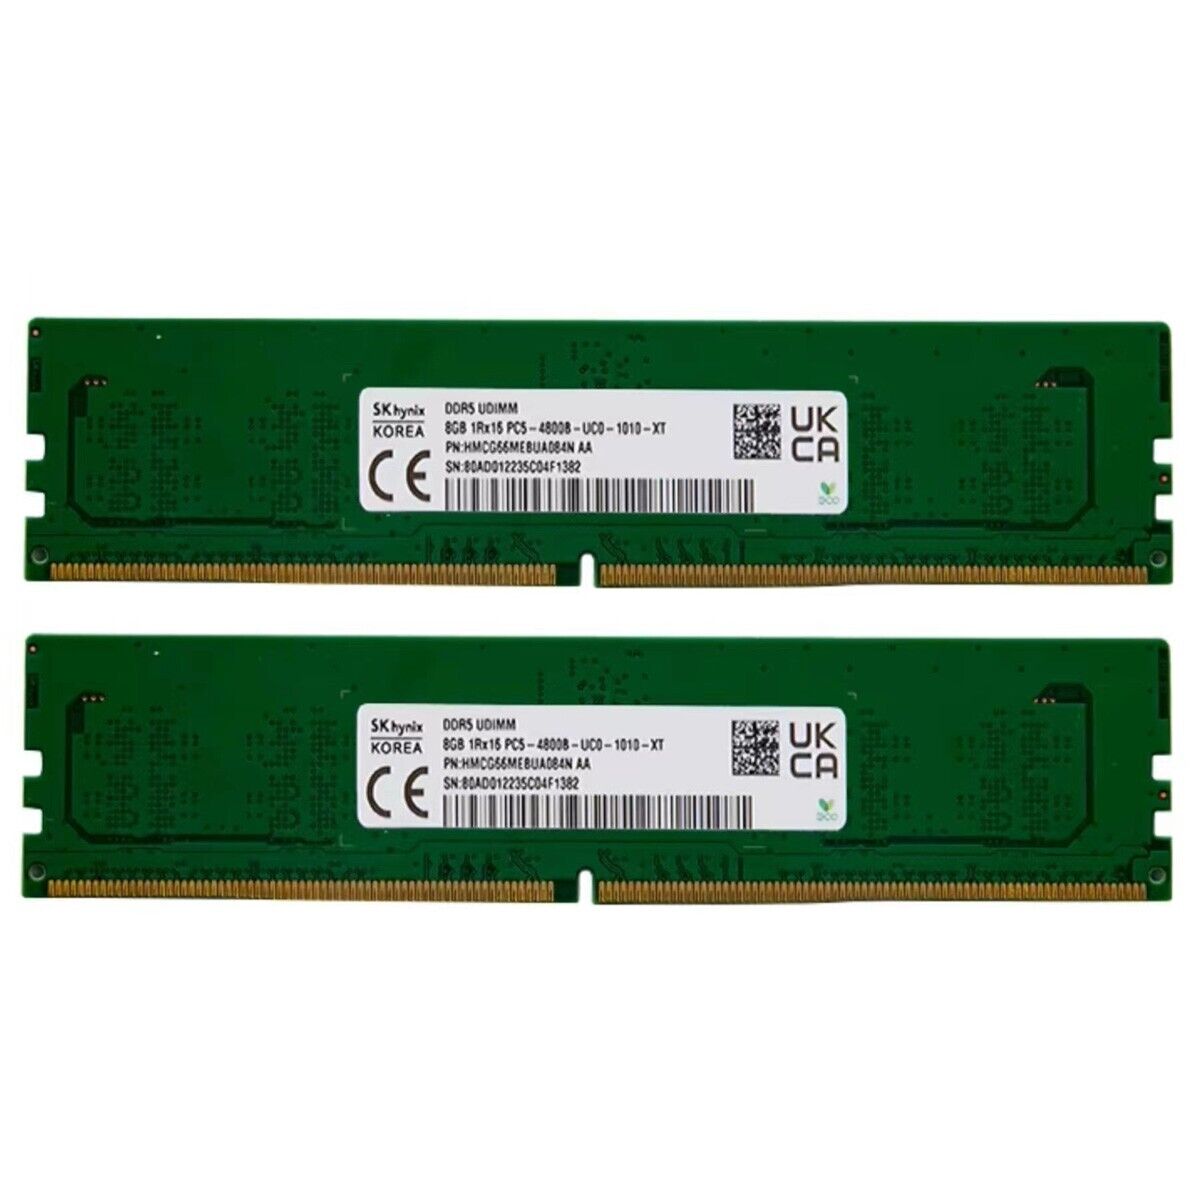 Hynix 16GB (2X8GB) DDR5 DDR5 4800MHz PC5-38400 UDIMM Memory Ram HMCG66MEBUA084N